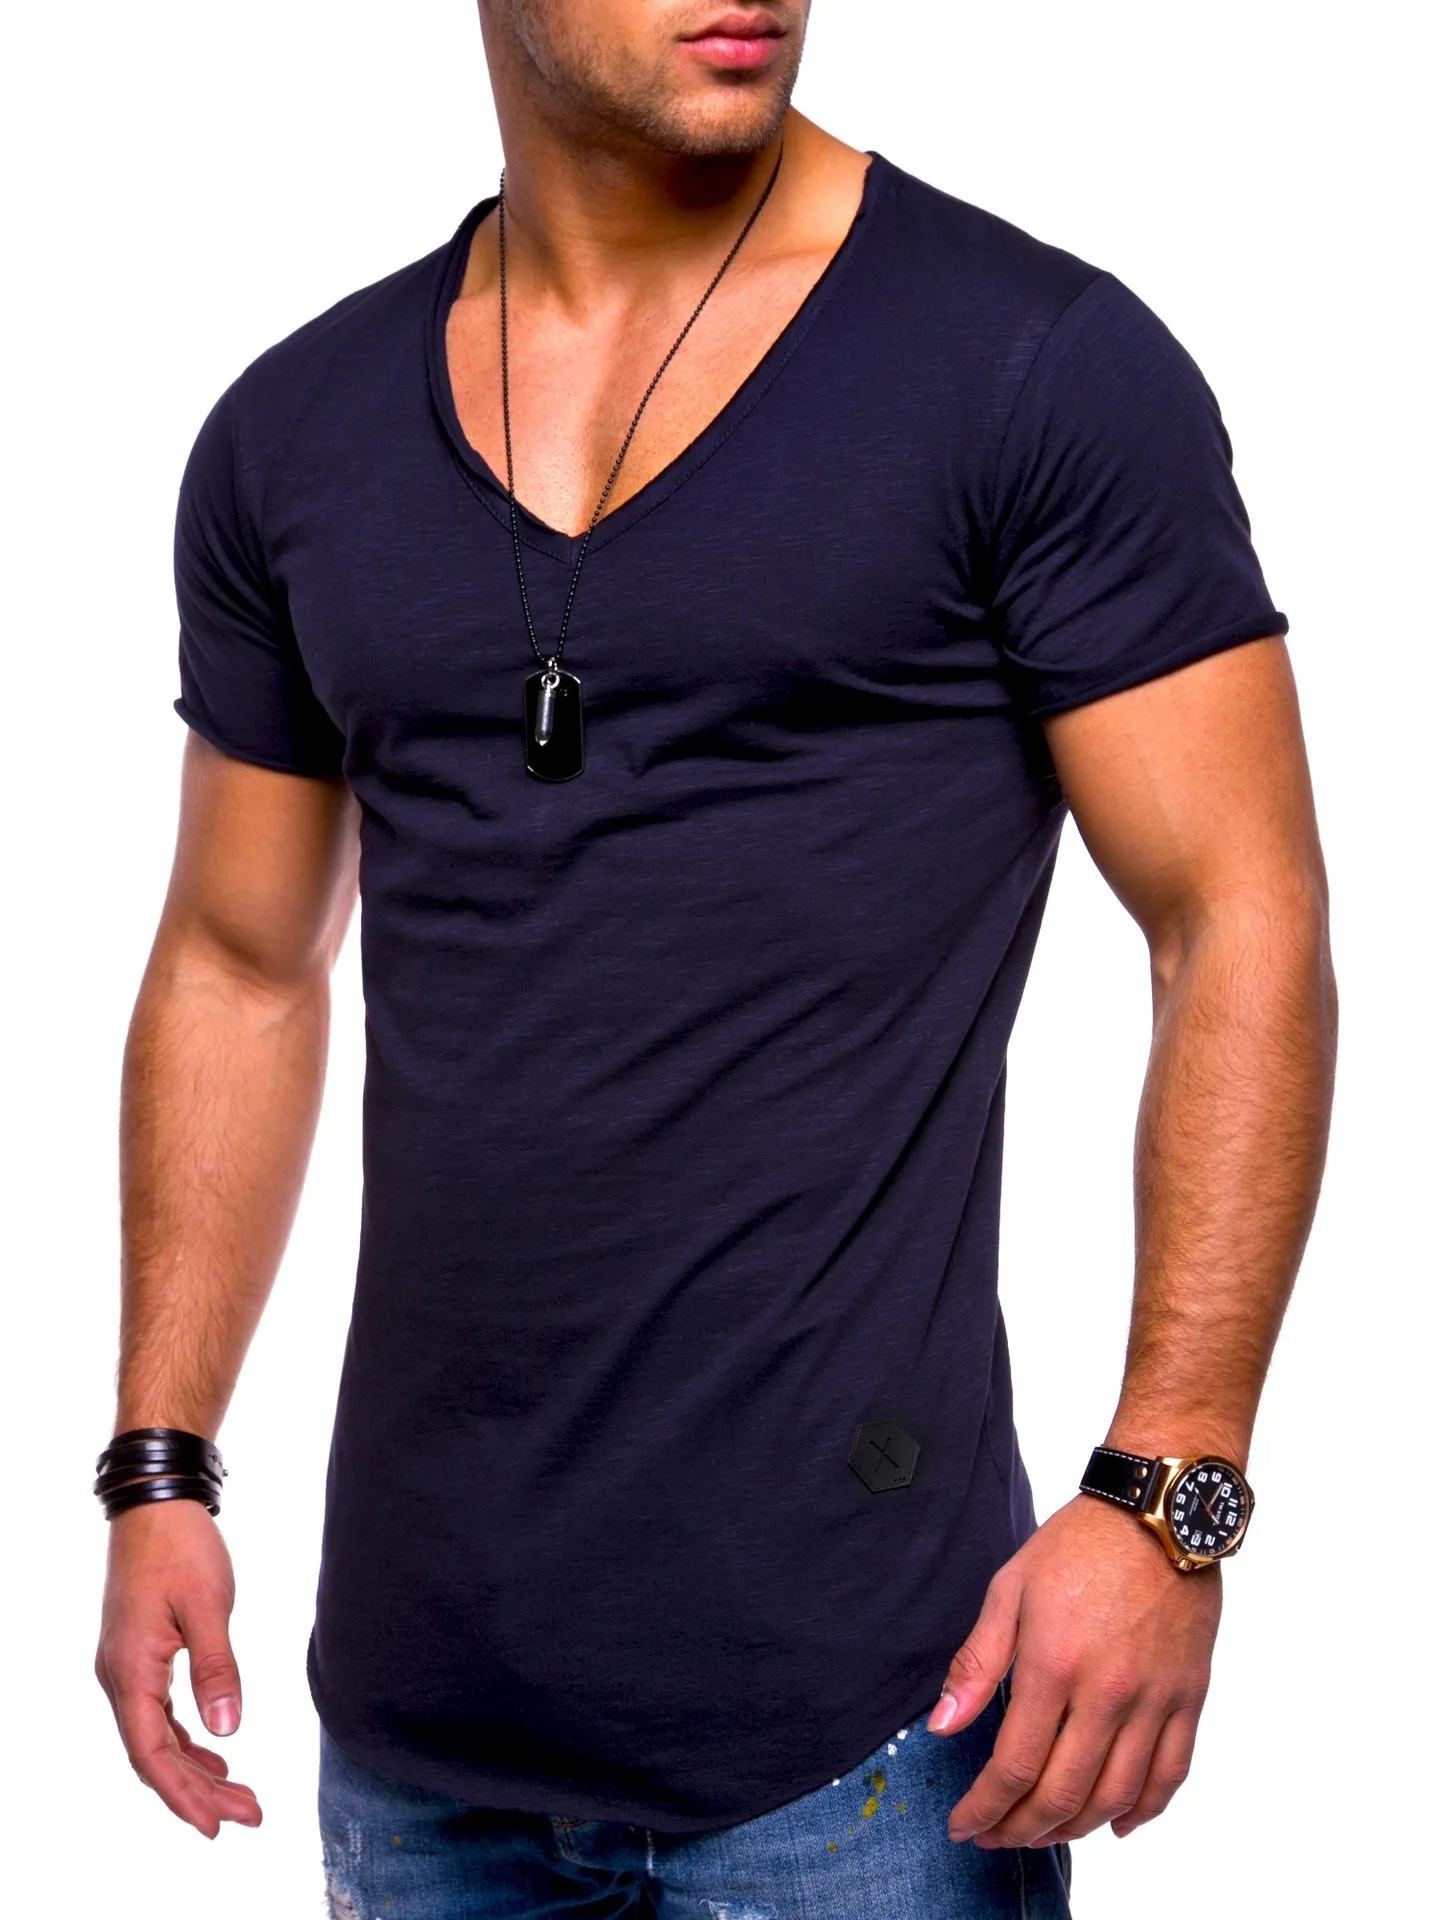 Мужская приталенная футболка с коротким рукавом серо белая или черная